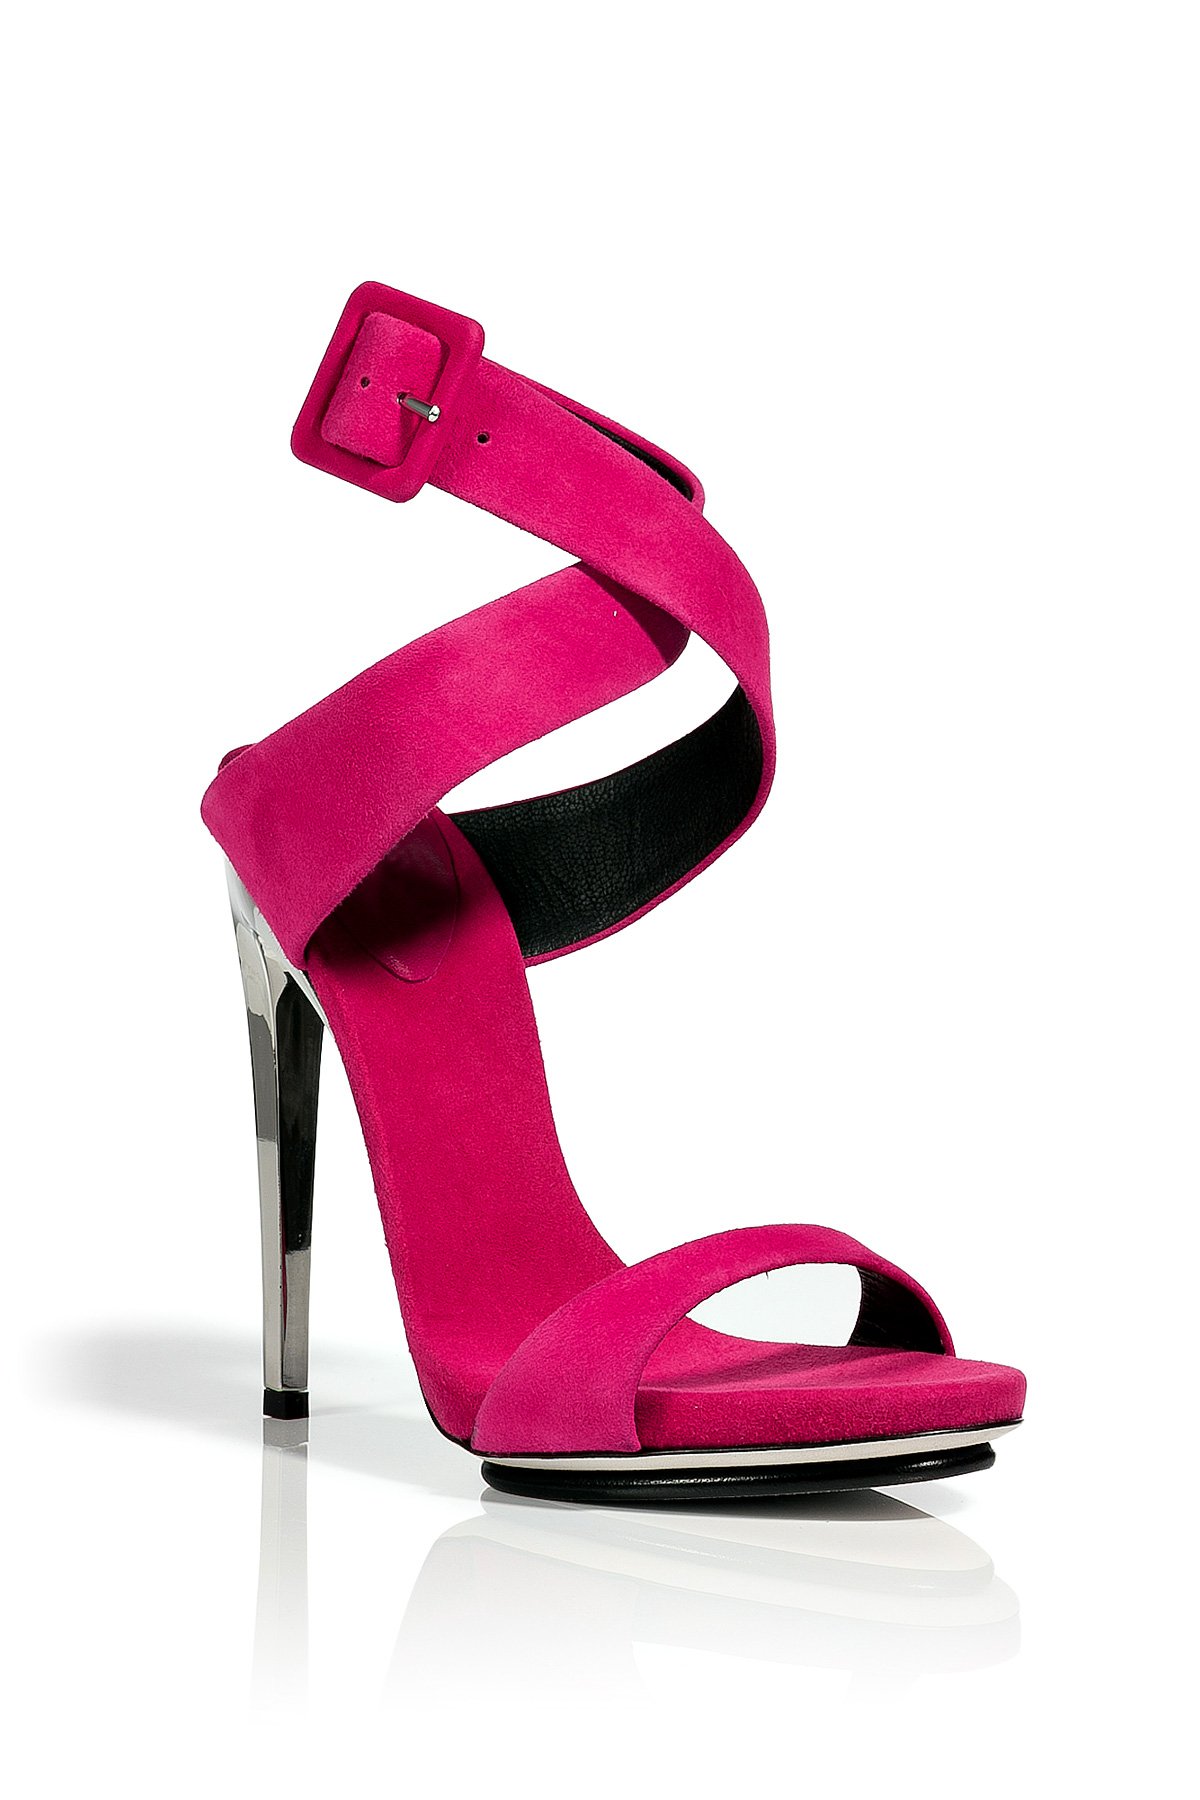 Buy > hot pink sandals heels > in stock